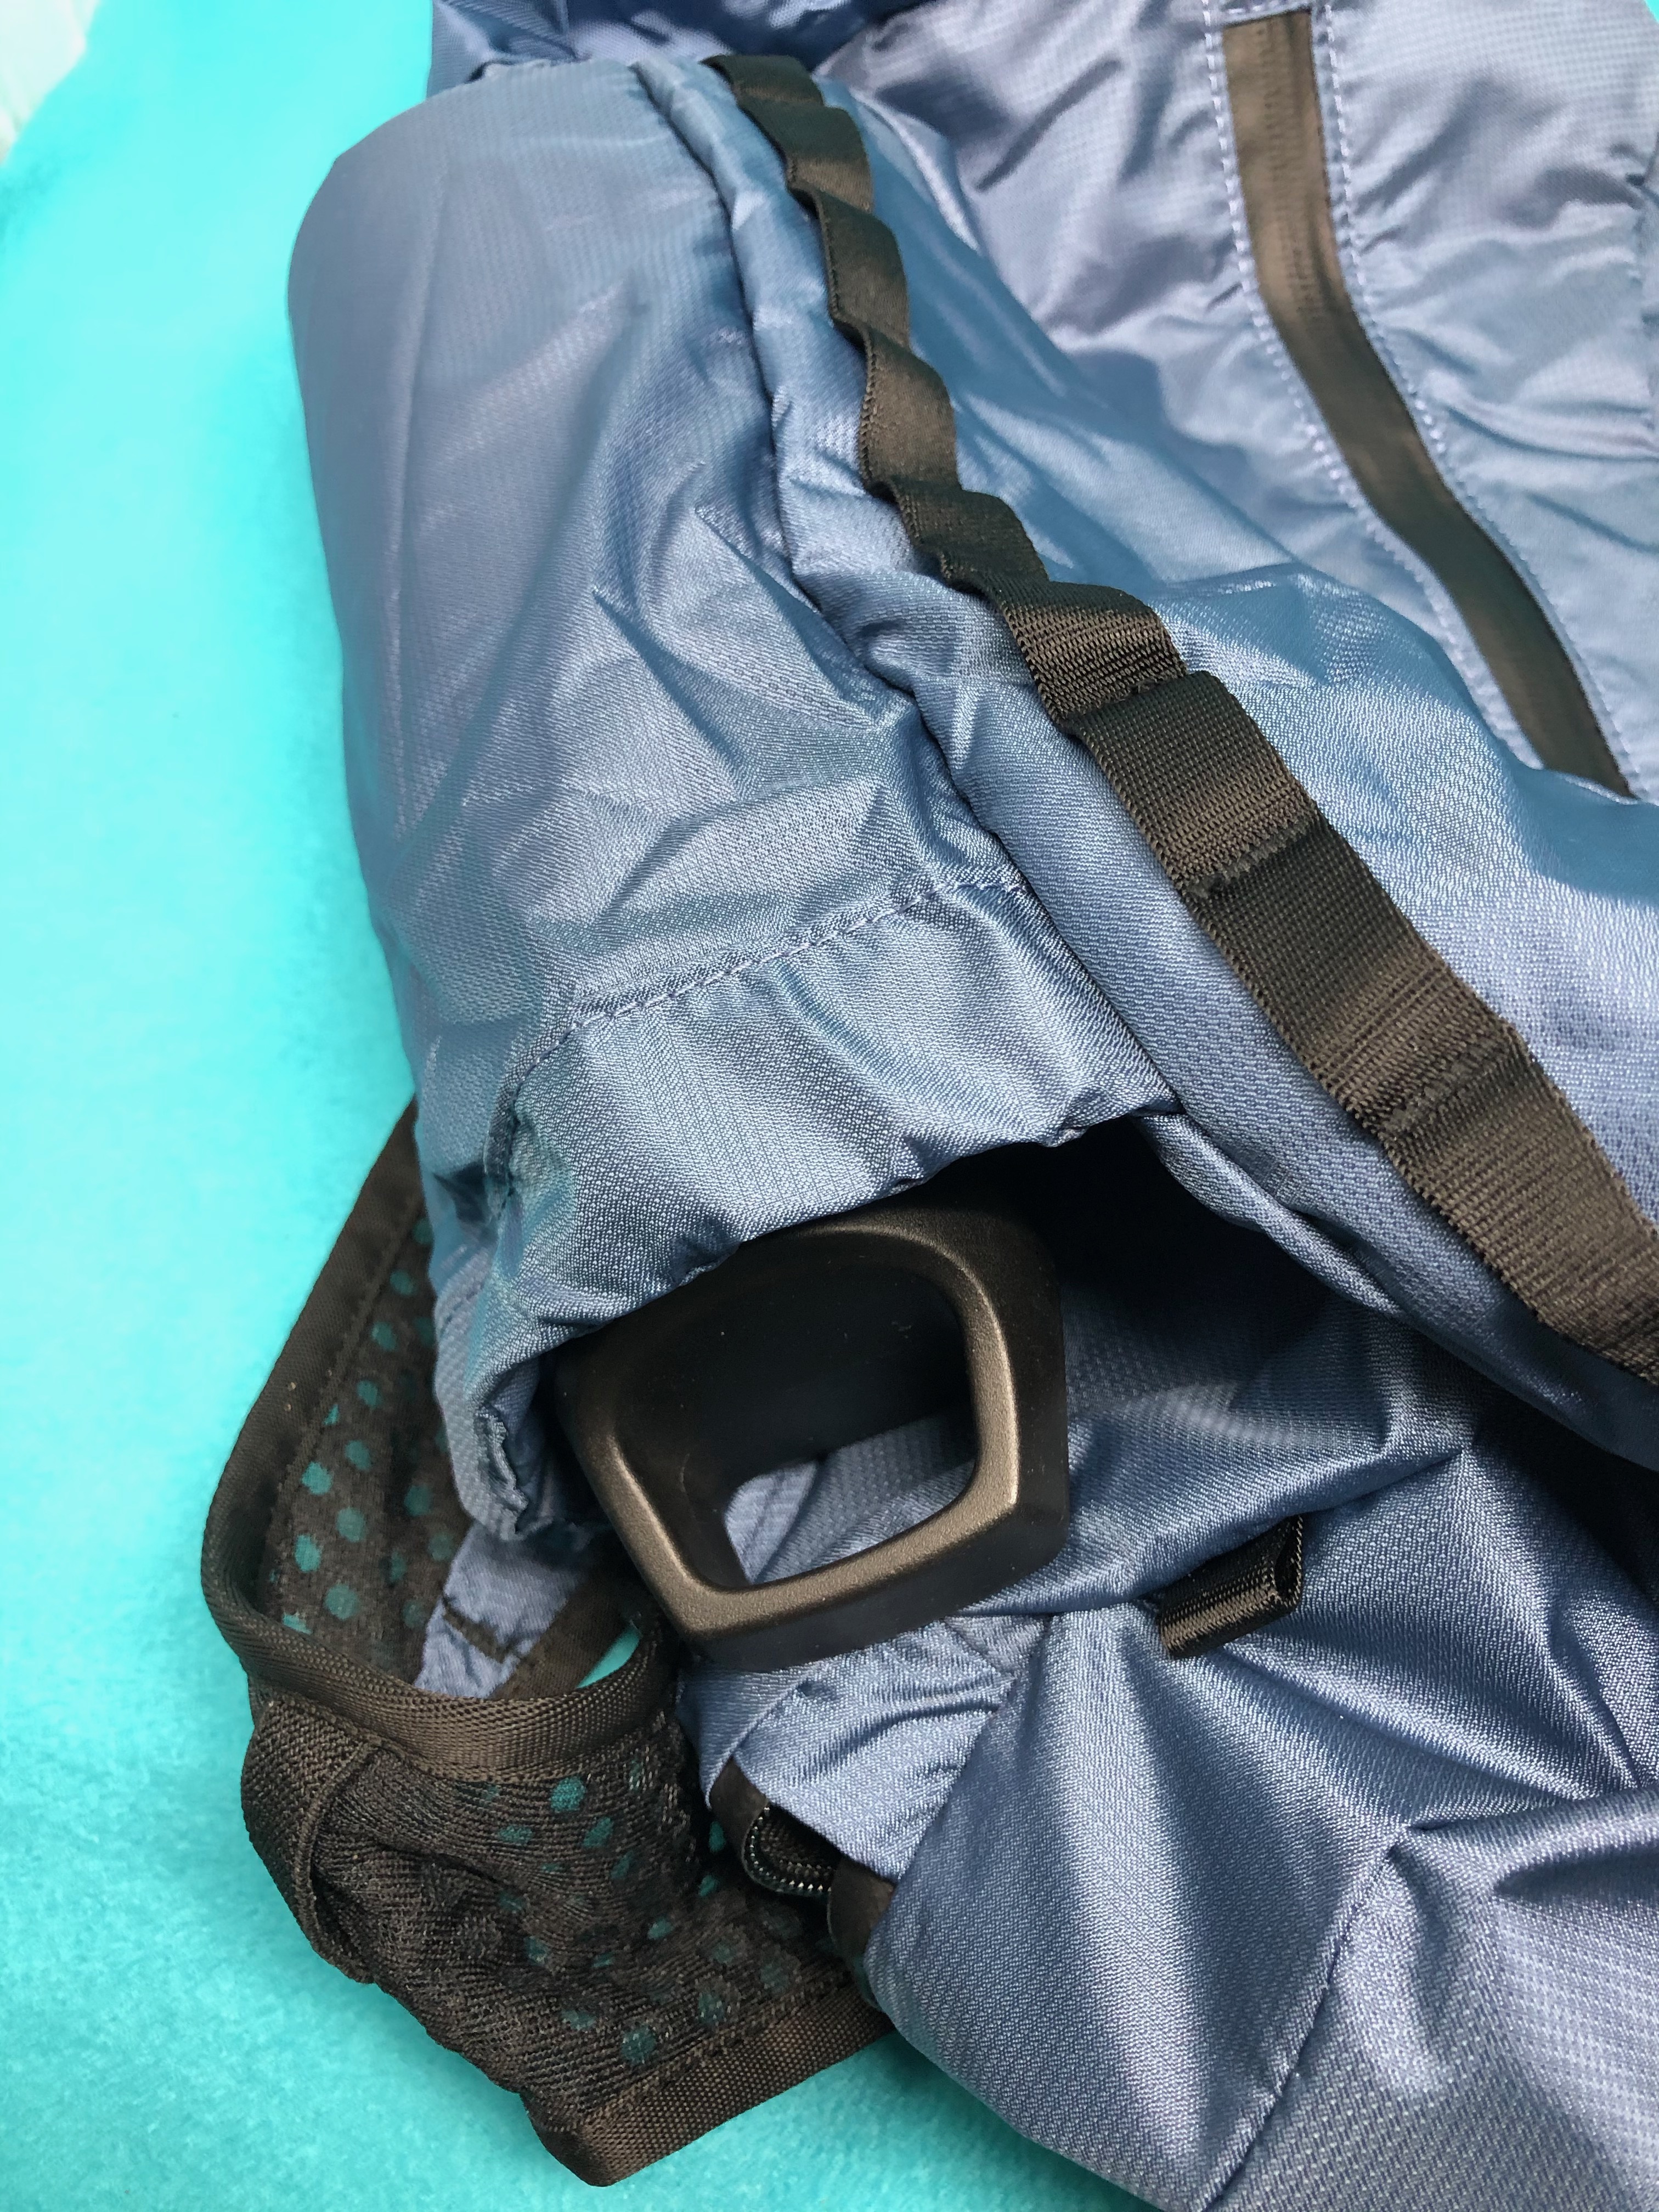 WANDRD VEER 18-liter packable daypack backpack review - The Gadgeteer